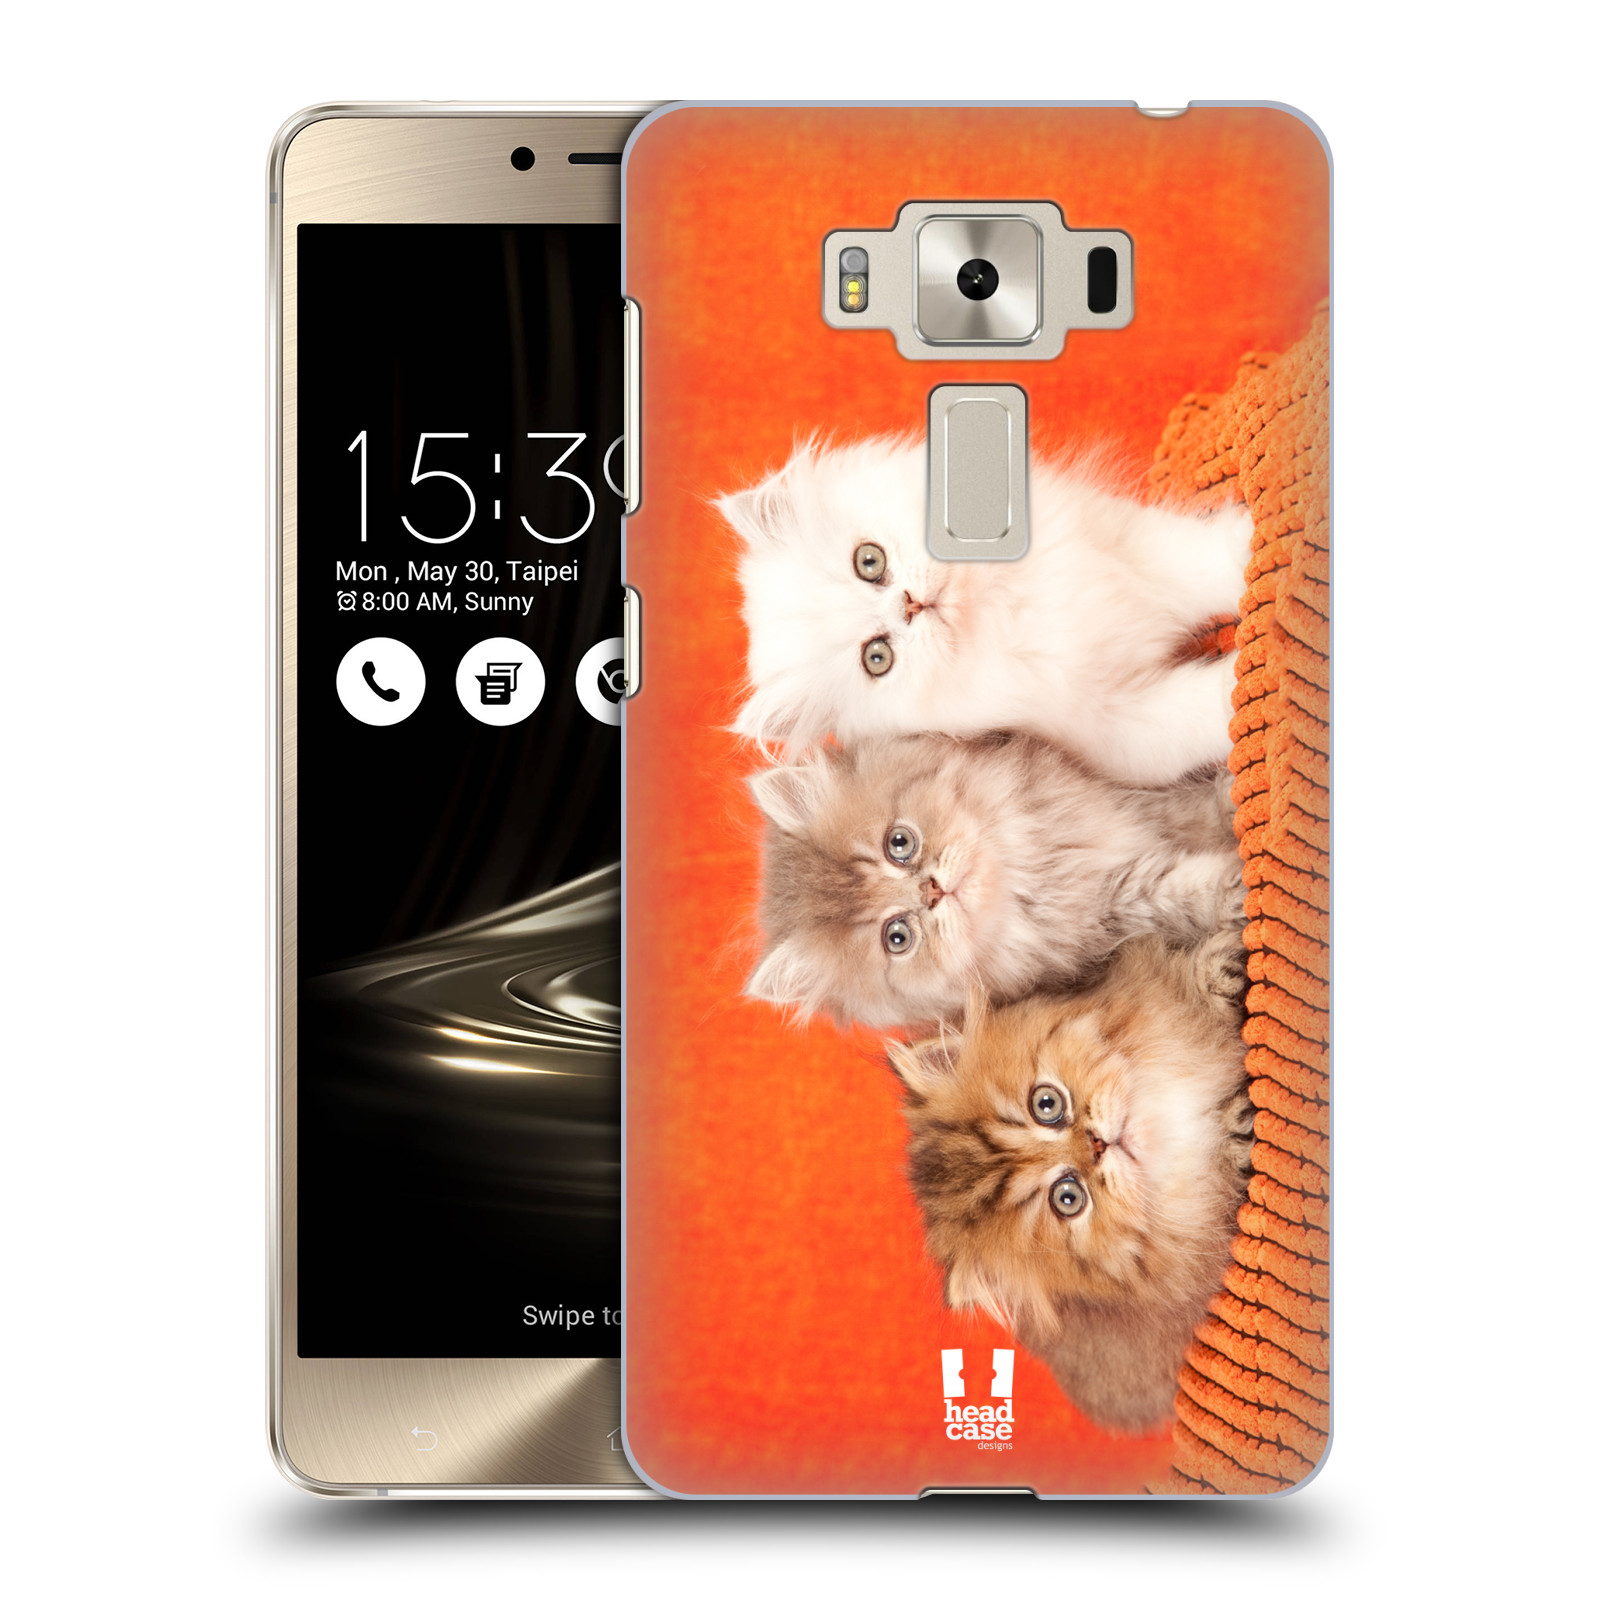 HEAD CASE plastový obal na mobil Asus Zenfone 3 DELUXE ZS550KL vzor Kočičky koťata foto 3 kočky